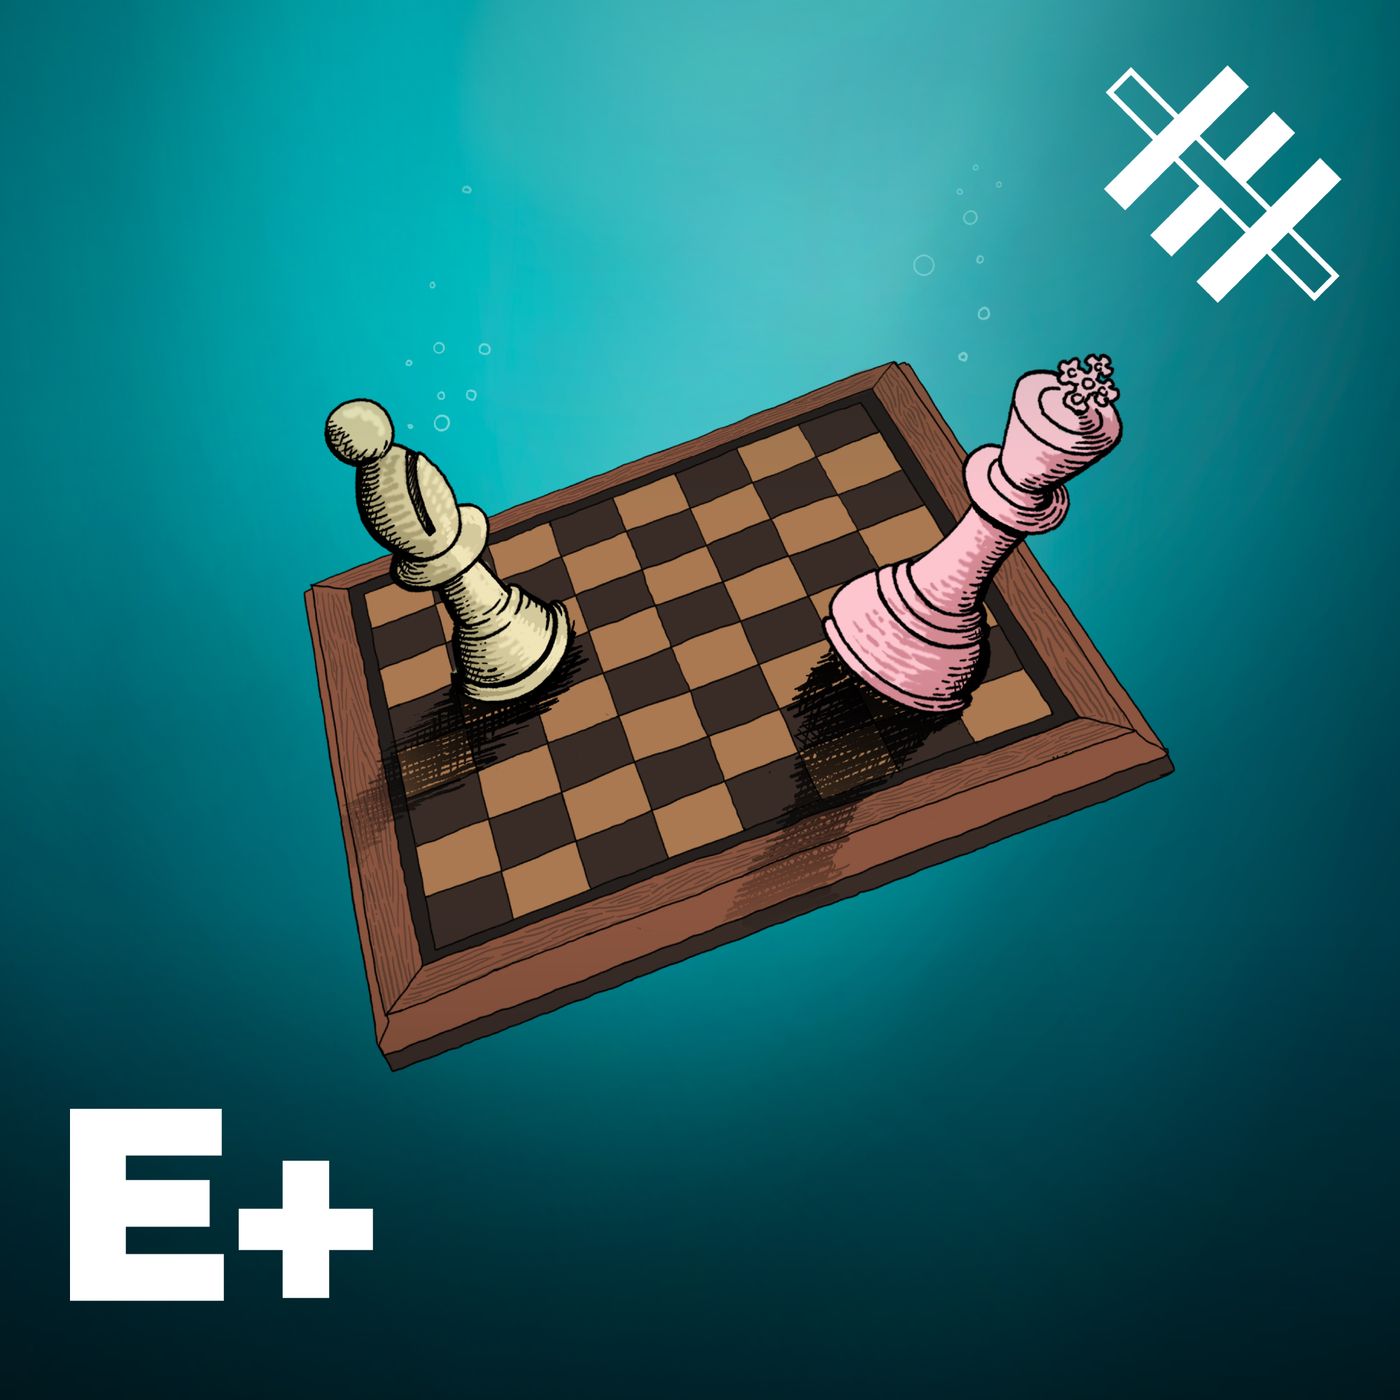 Samid vs Viale | Bonus Track: El Rey del ajedrez